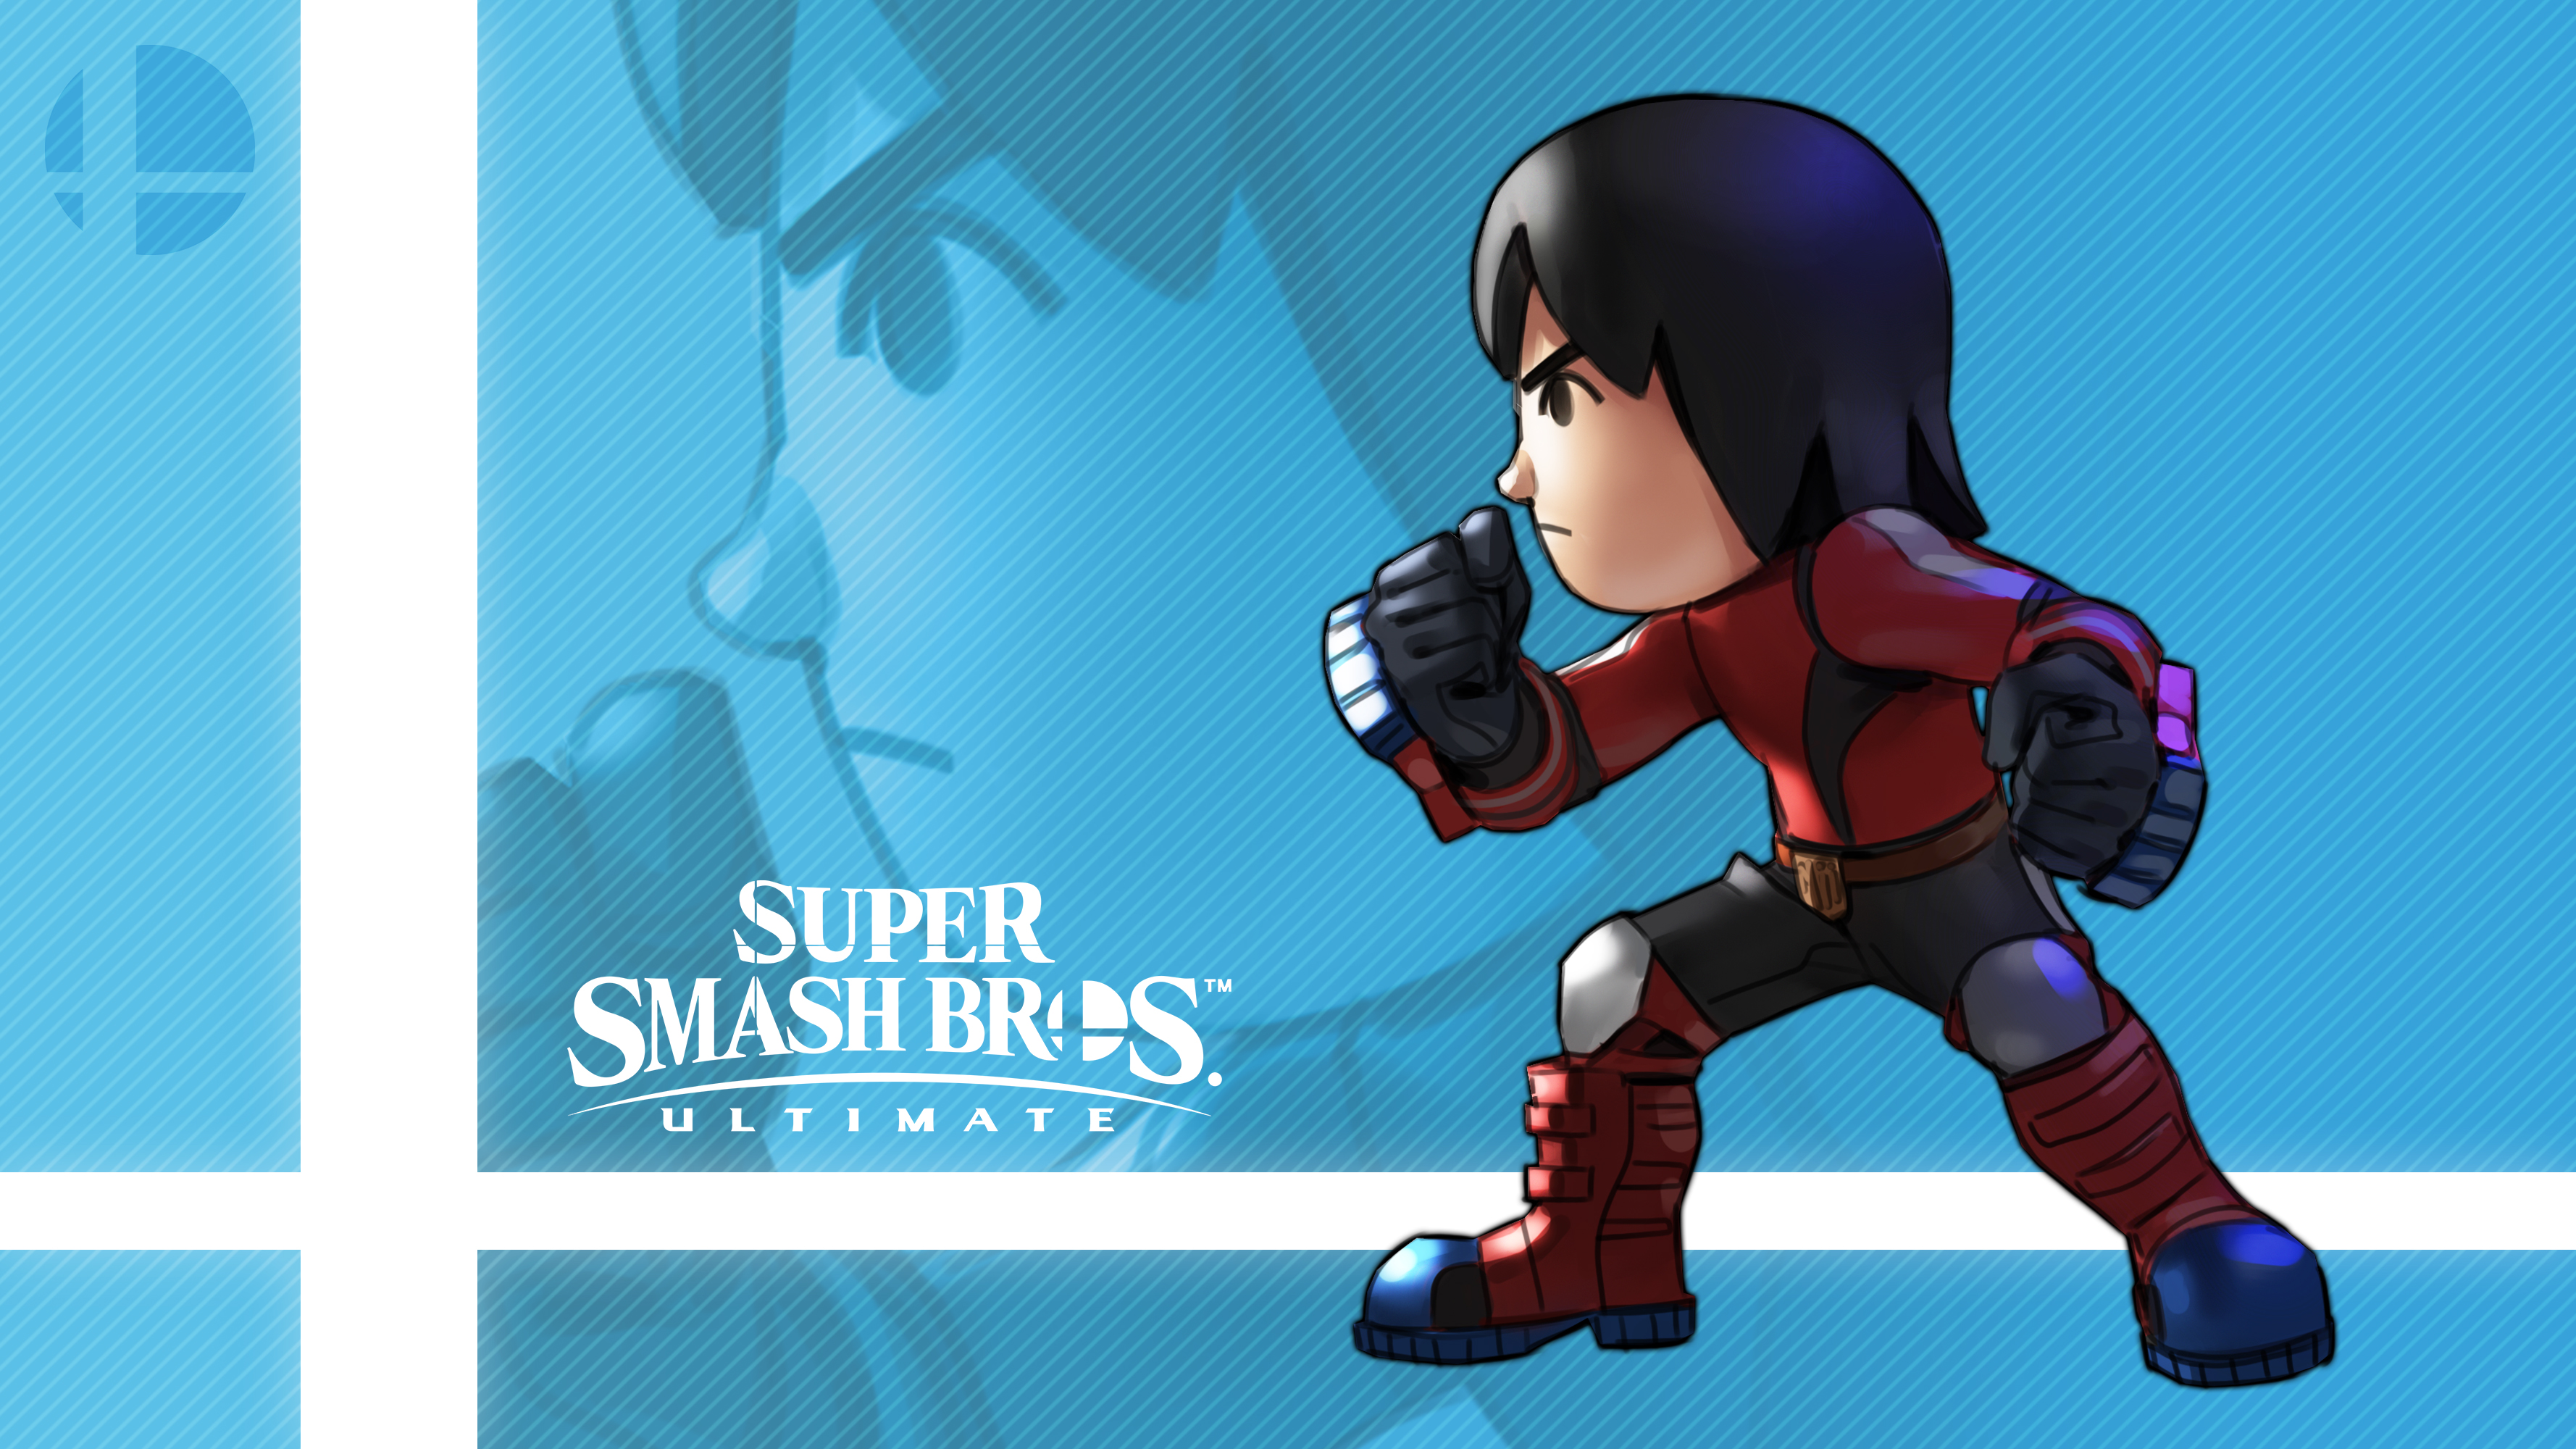 Mii Brawler In Super Smash Bros. Ultimate by Callum Nakajima